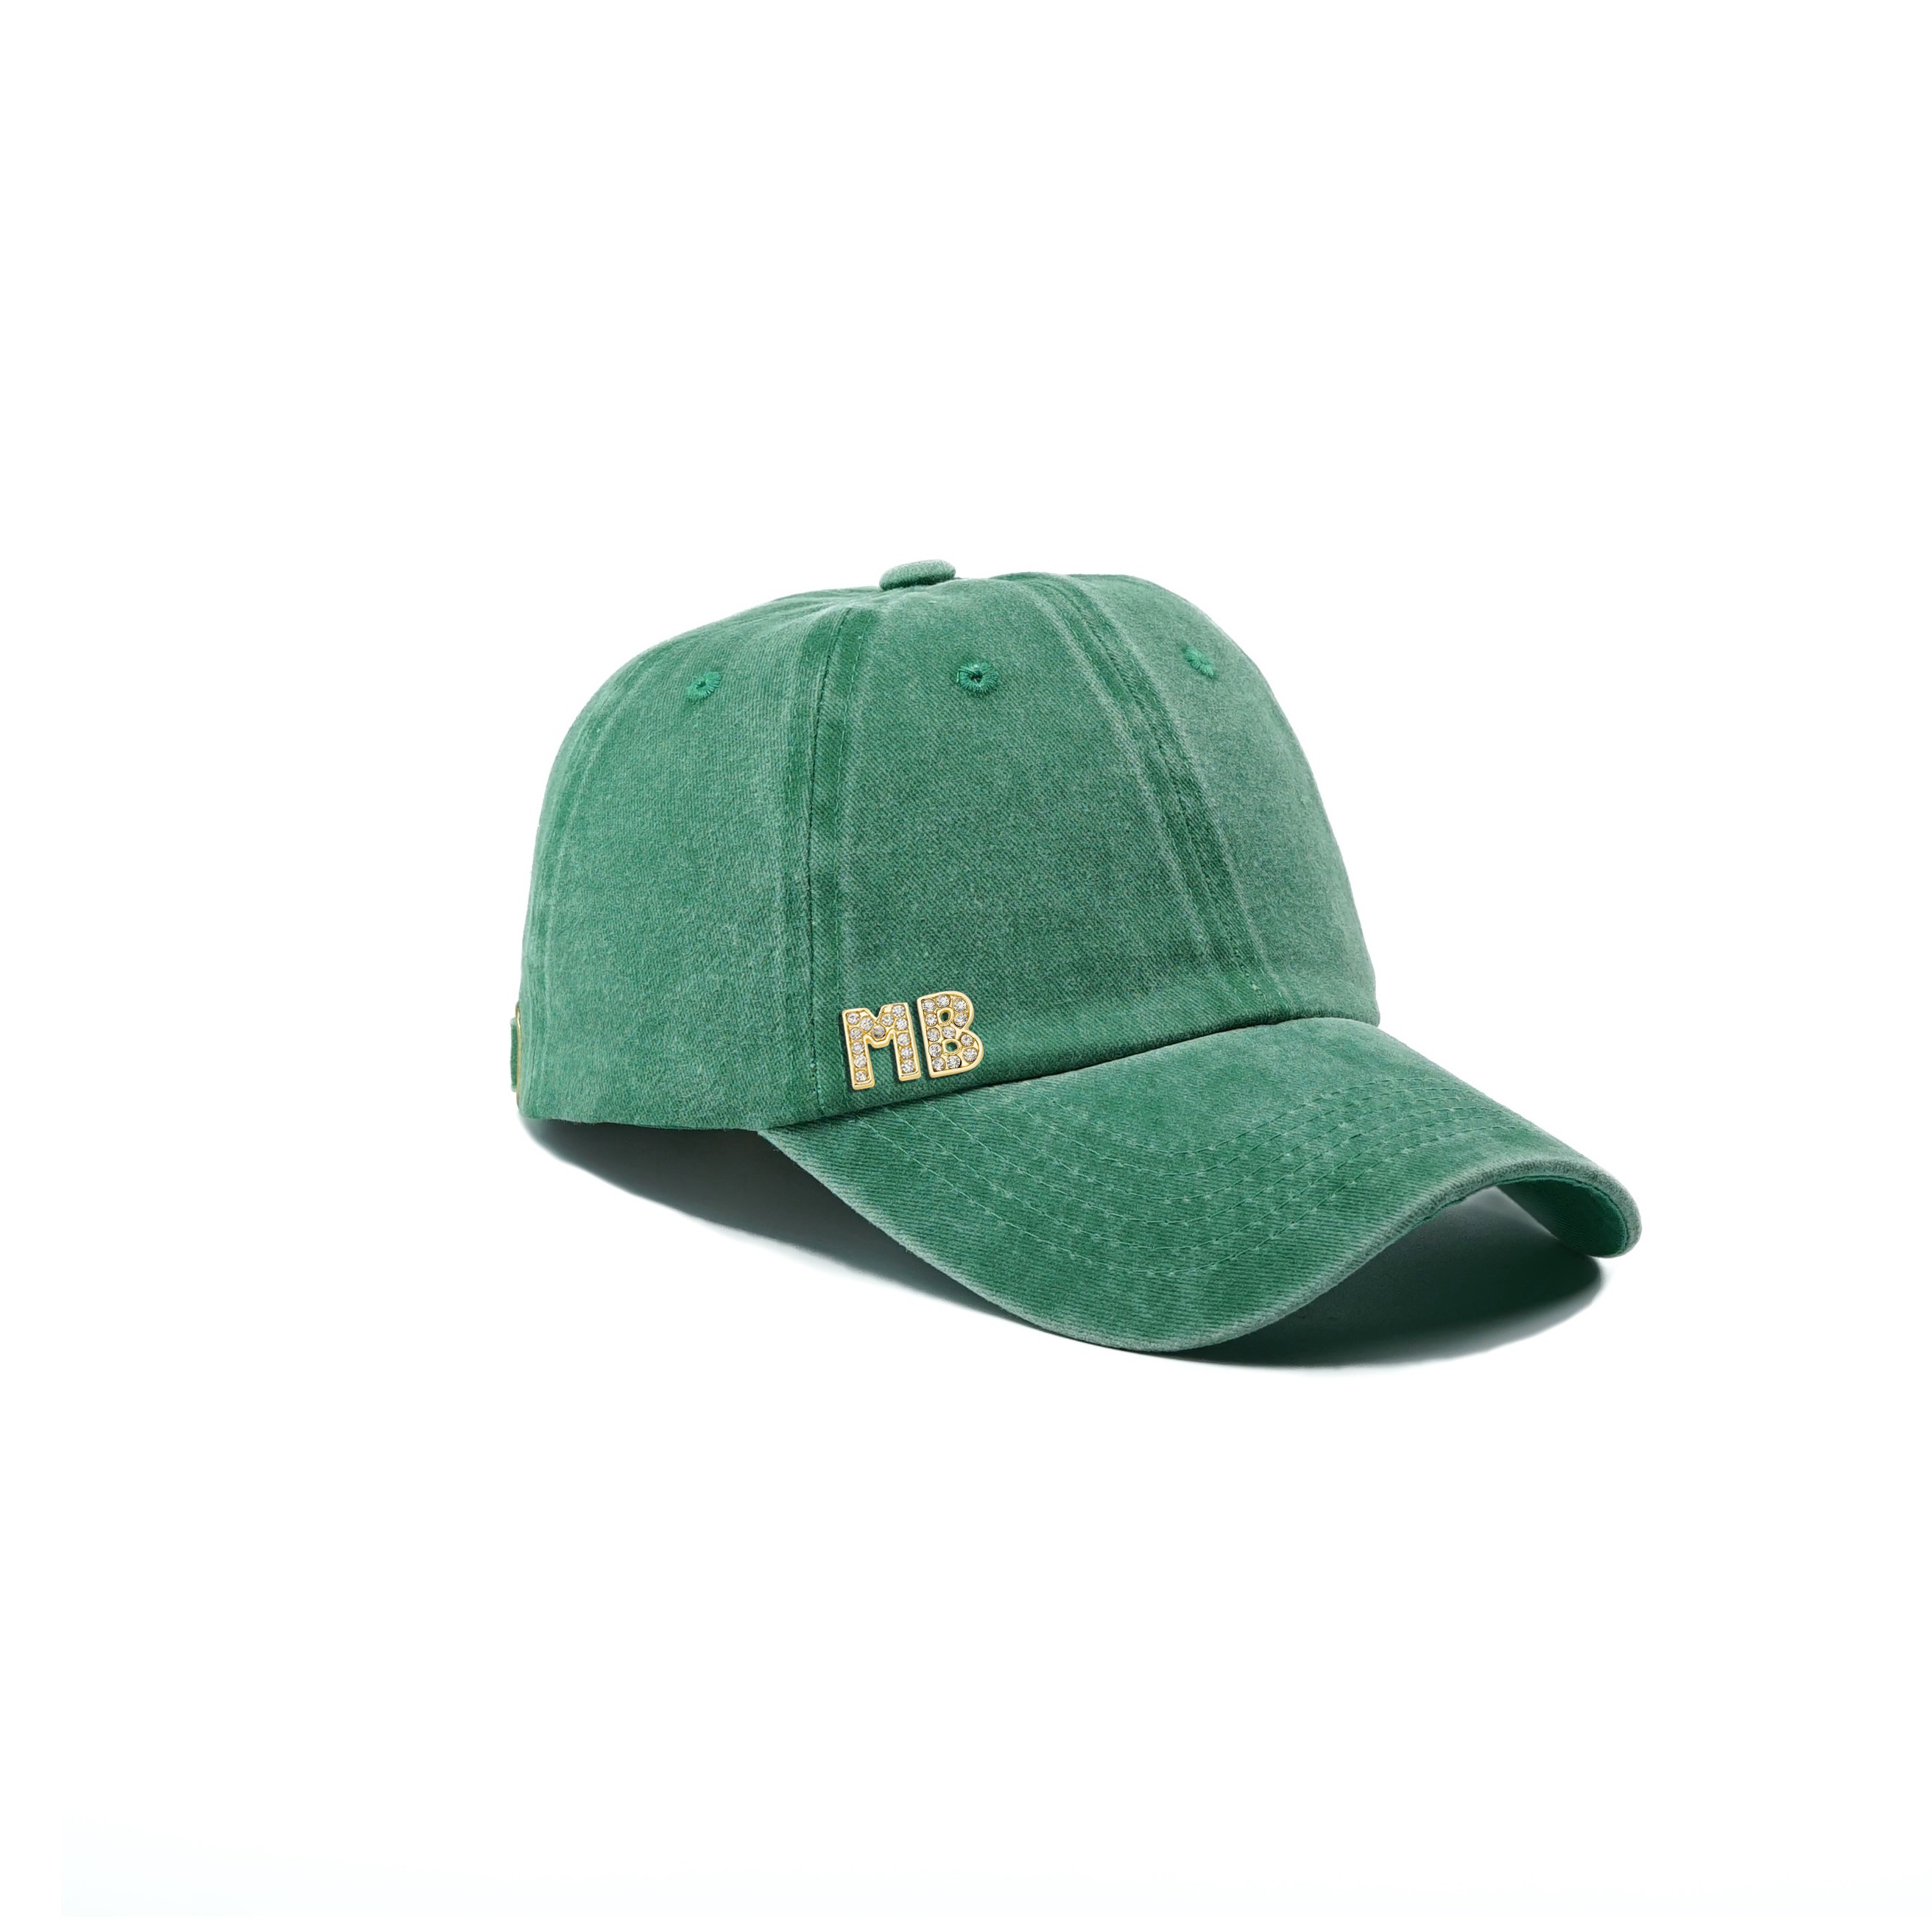 Twingold Kişiye Özel Yıkamalı Kep Şapka - Yeşil